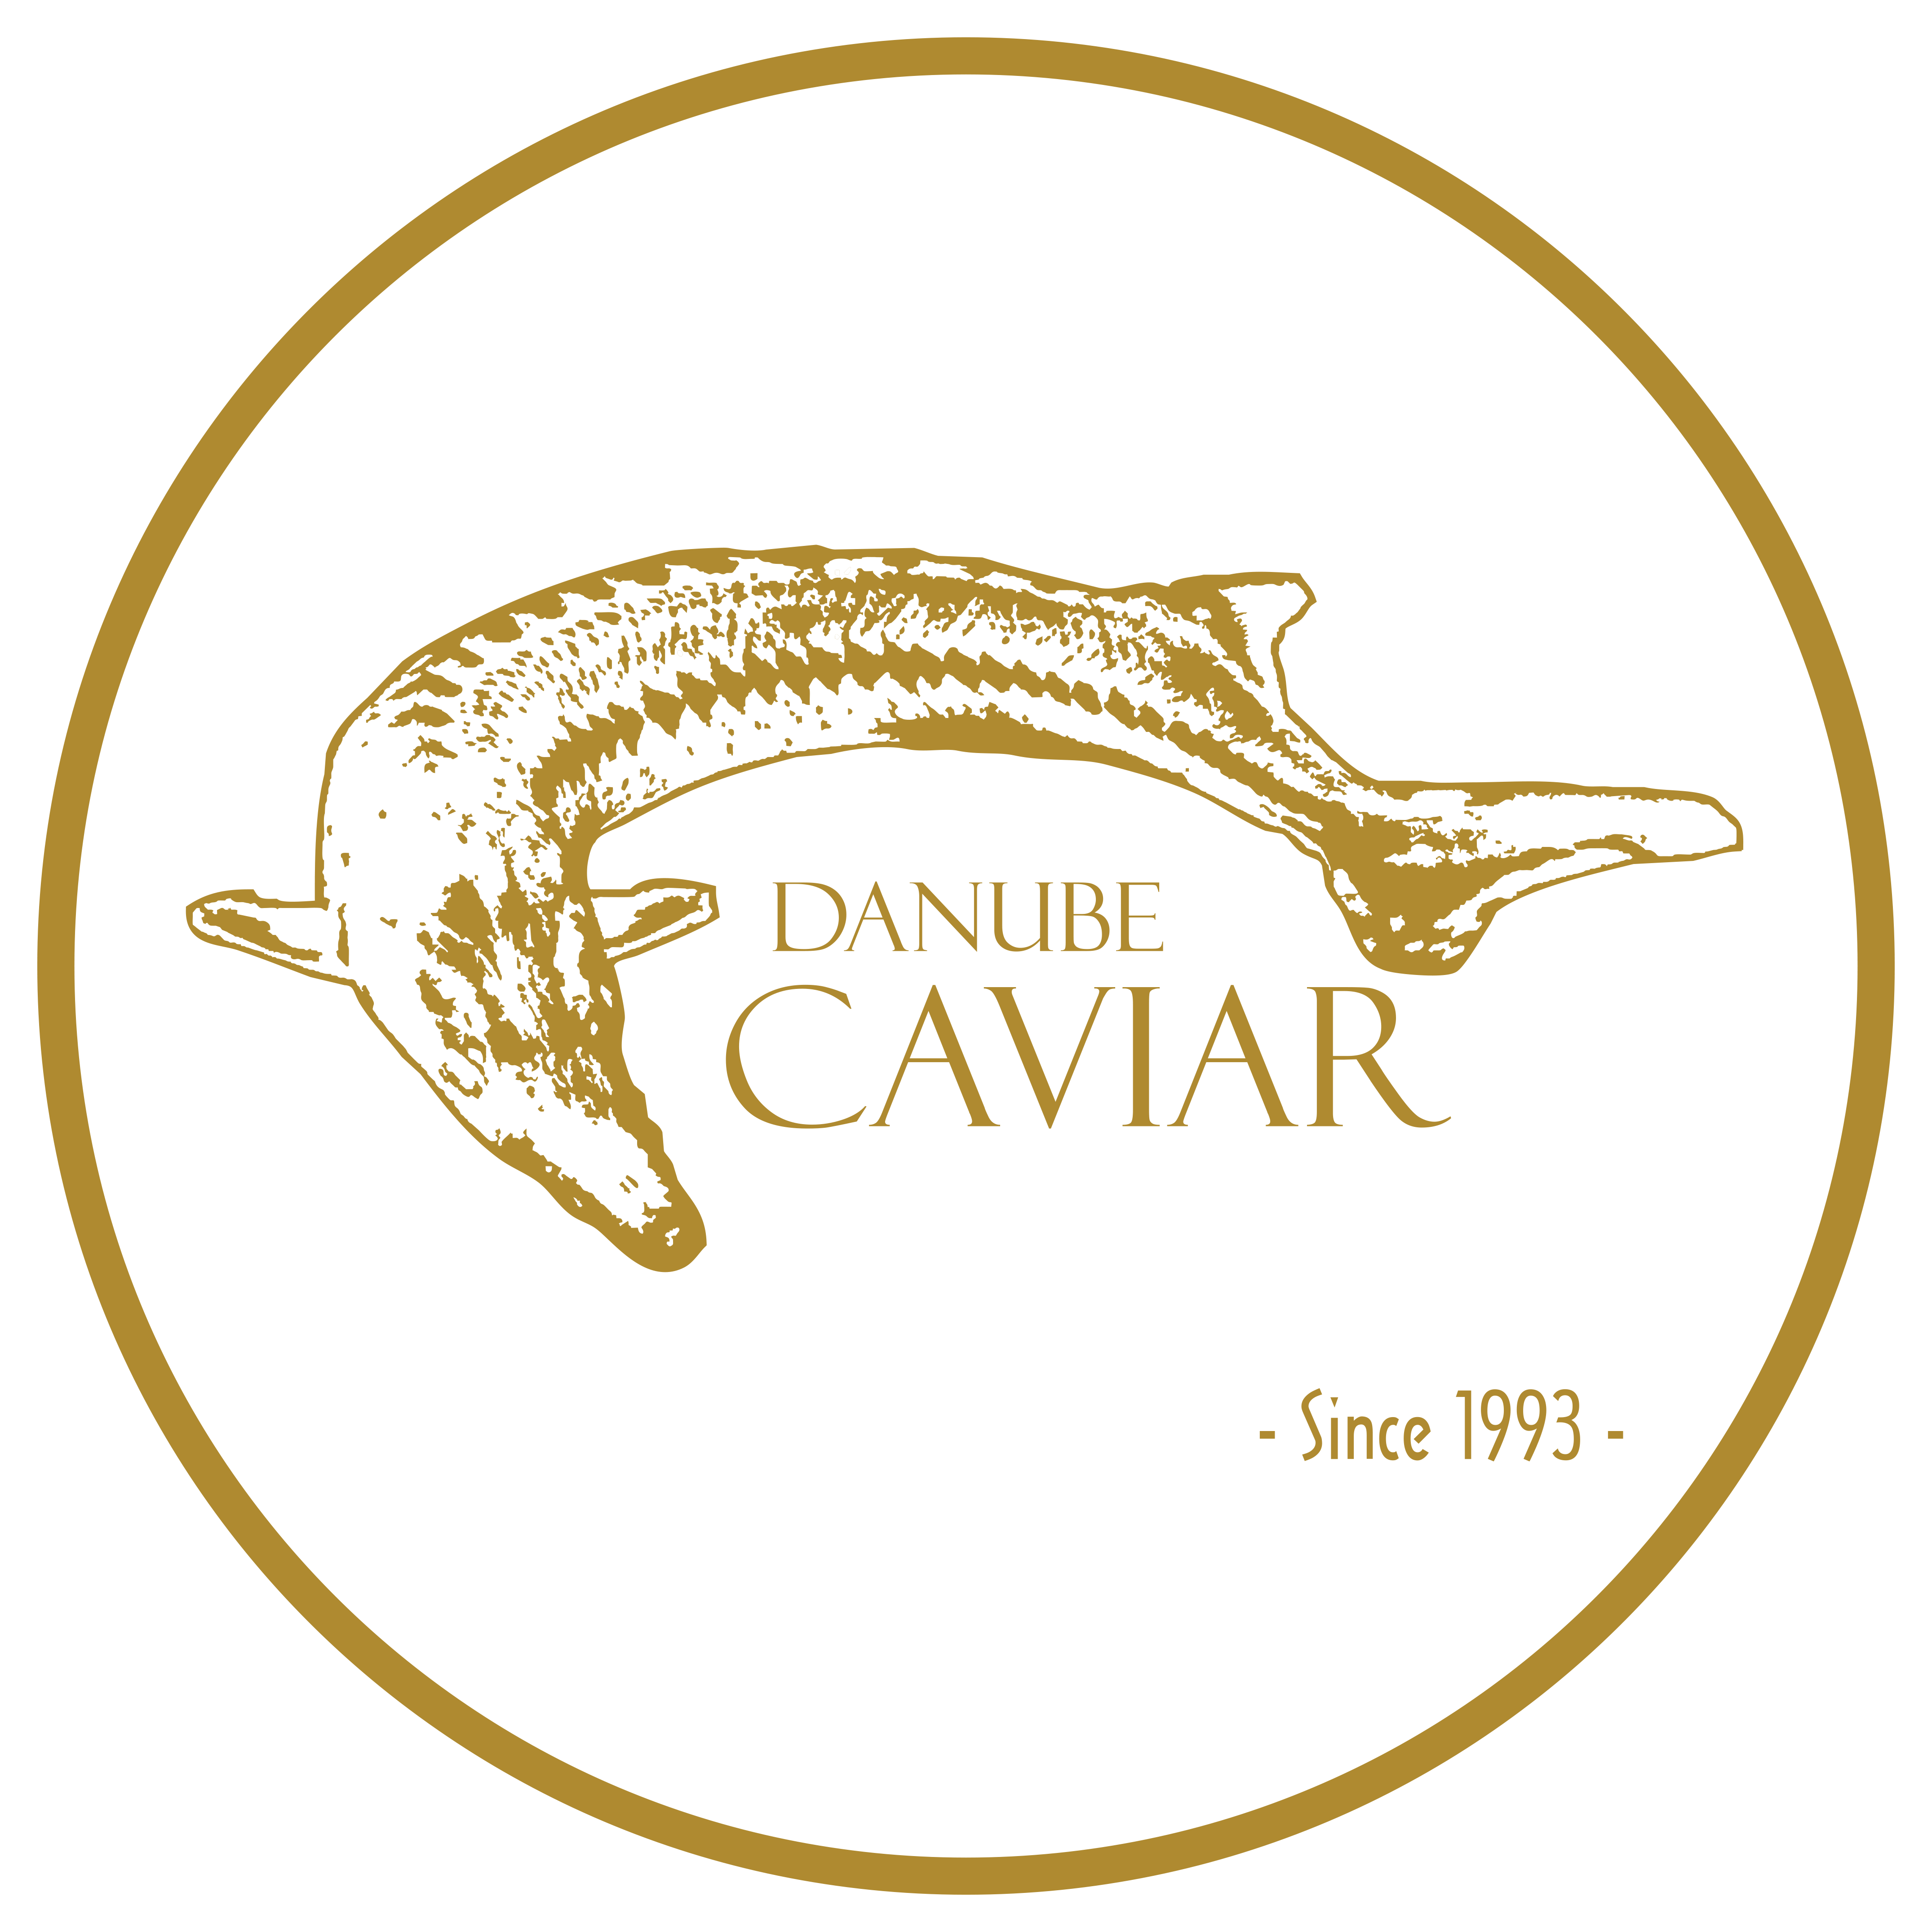 “Danube Caviar” – logo